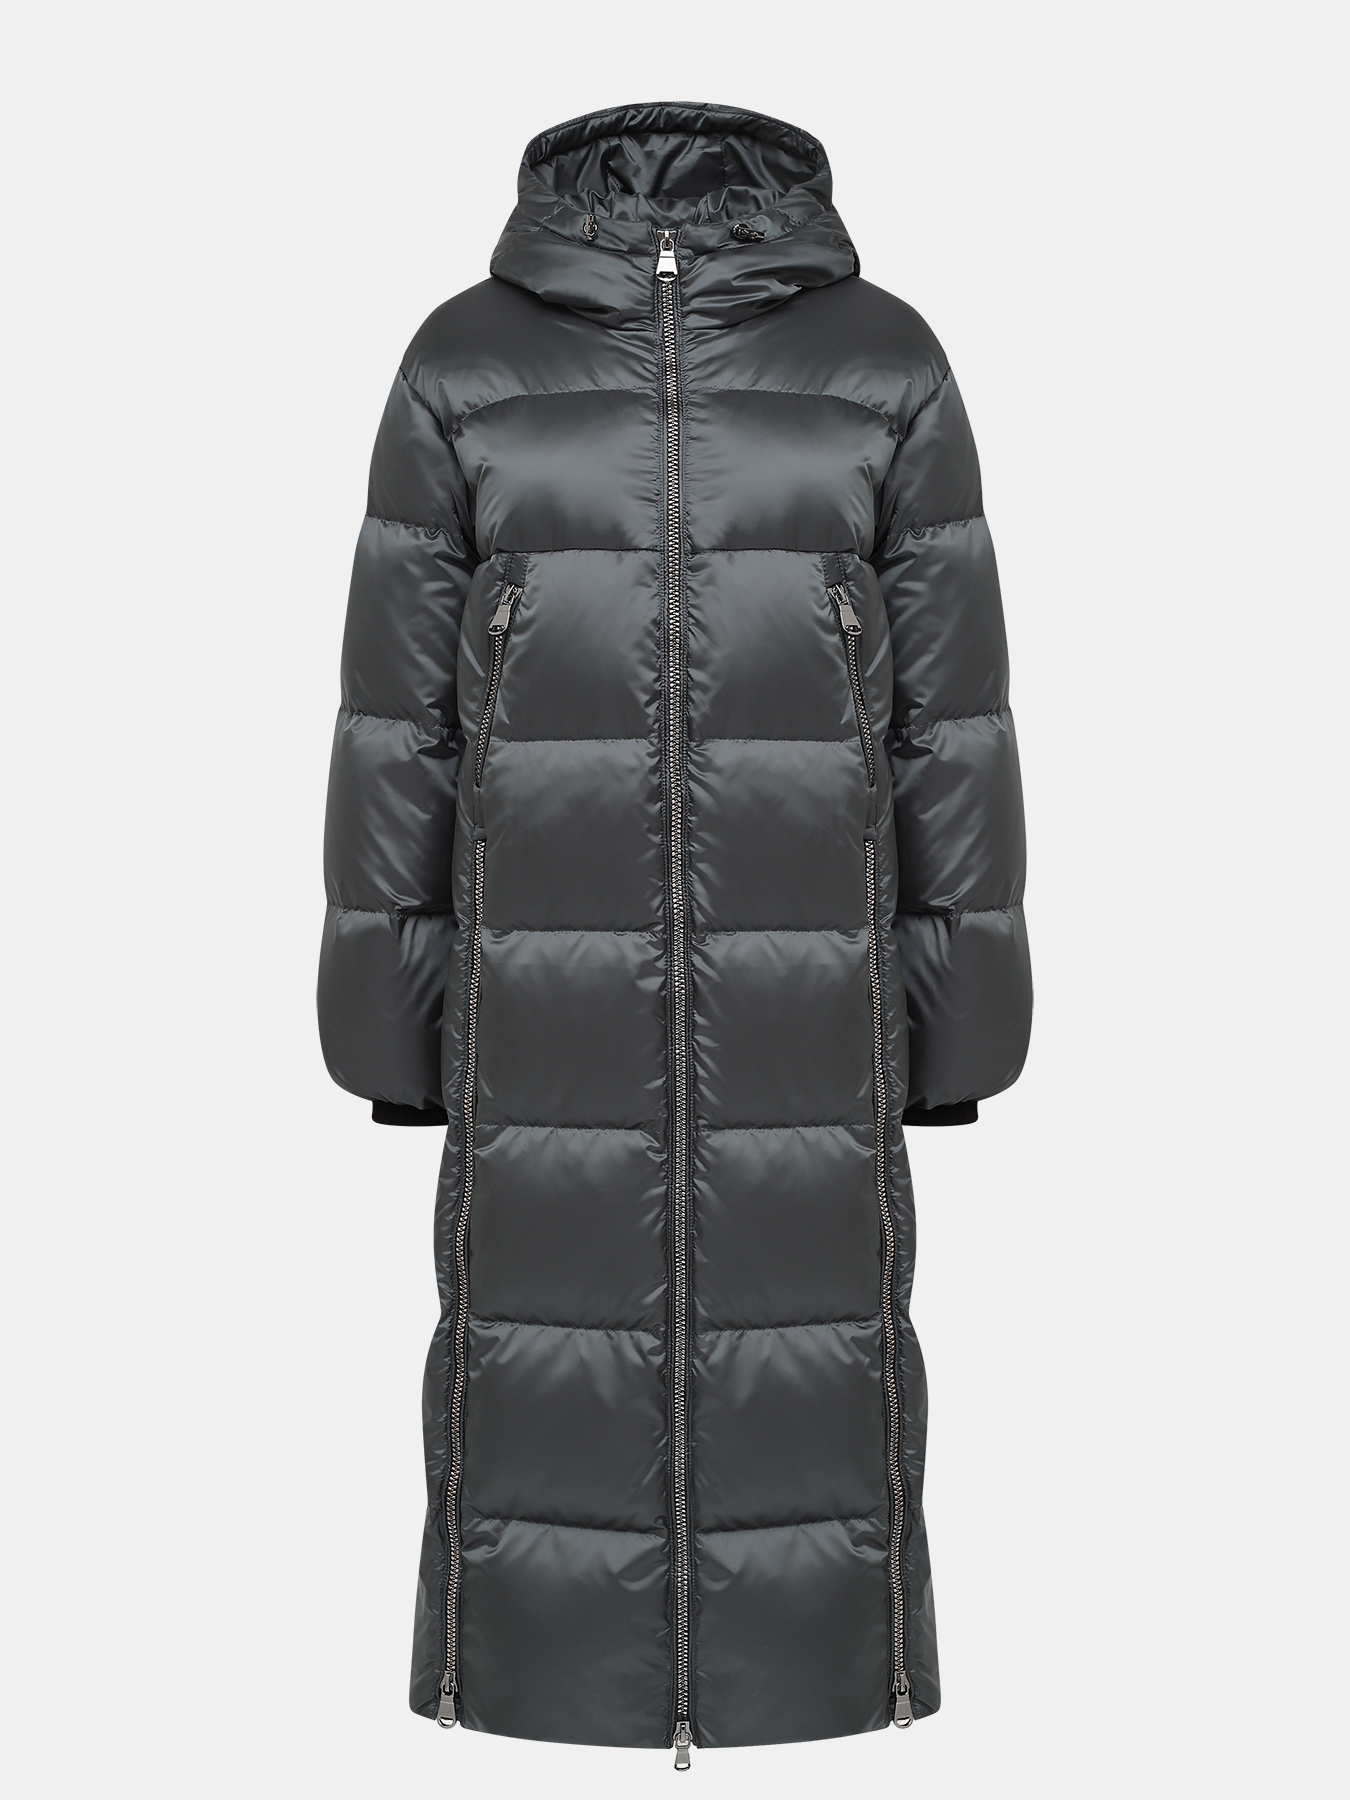 Пальто зимнее AVI 433514-020, цвет бирюзовый, размер 44